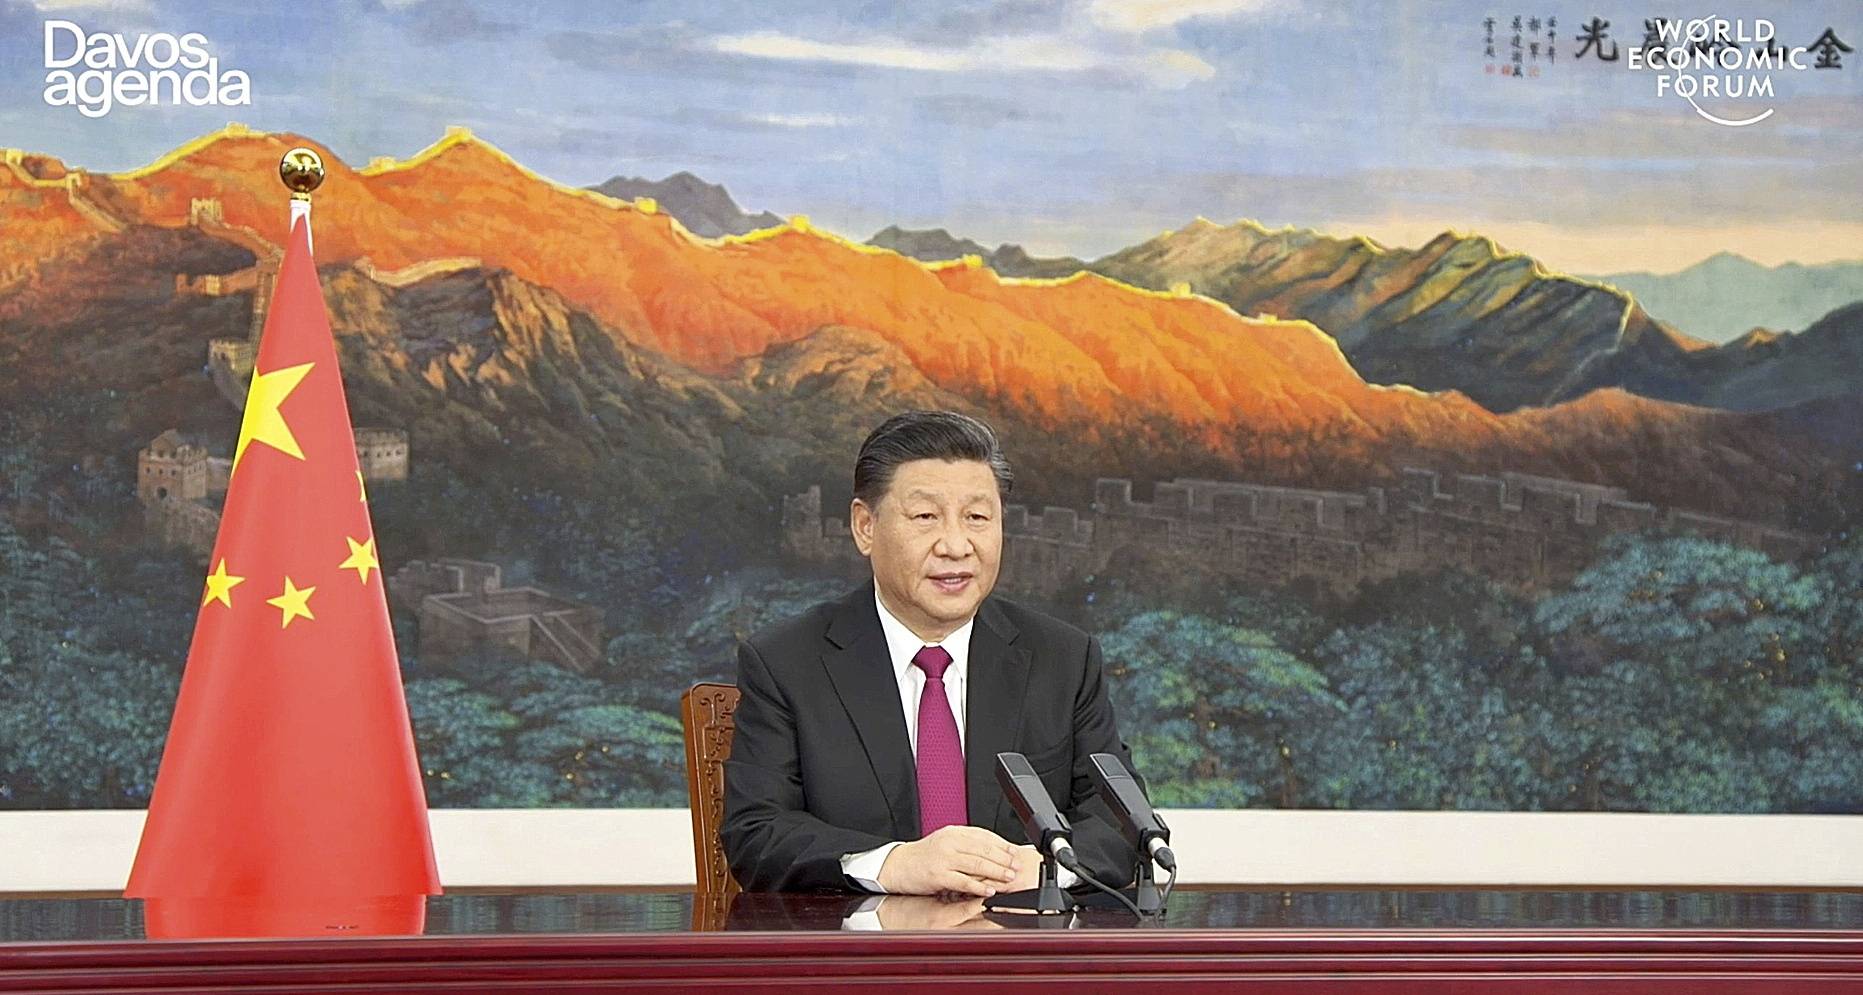 رئیس جمهور شی جین پینگ در اجلاس داووس.